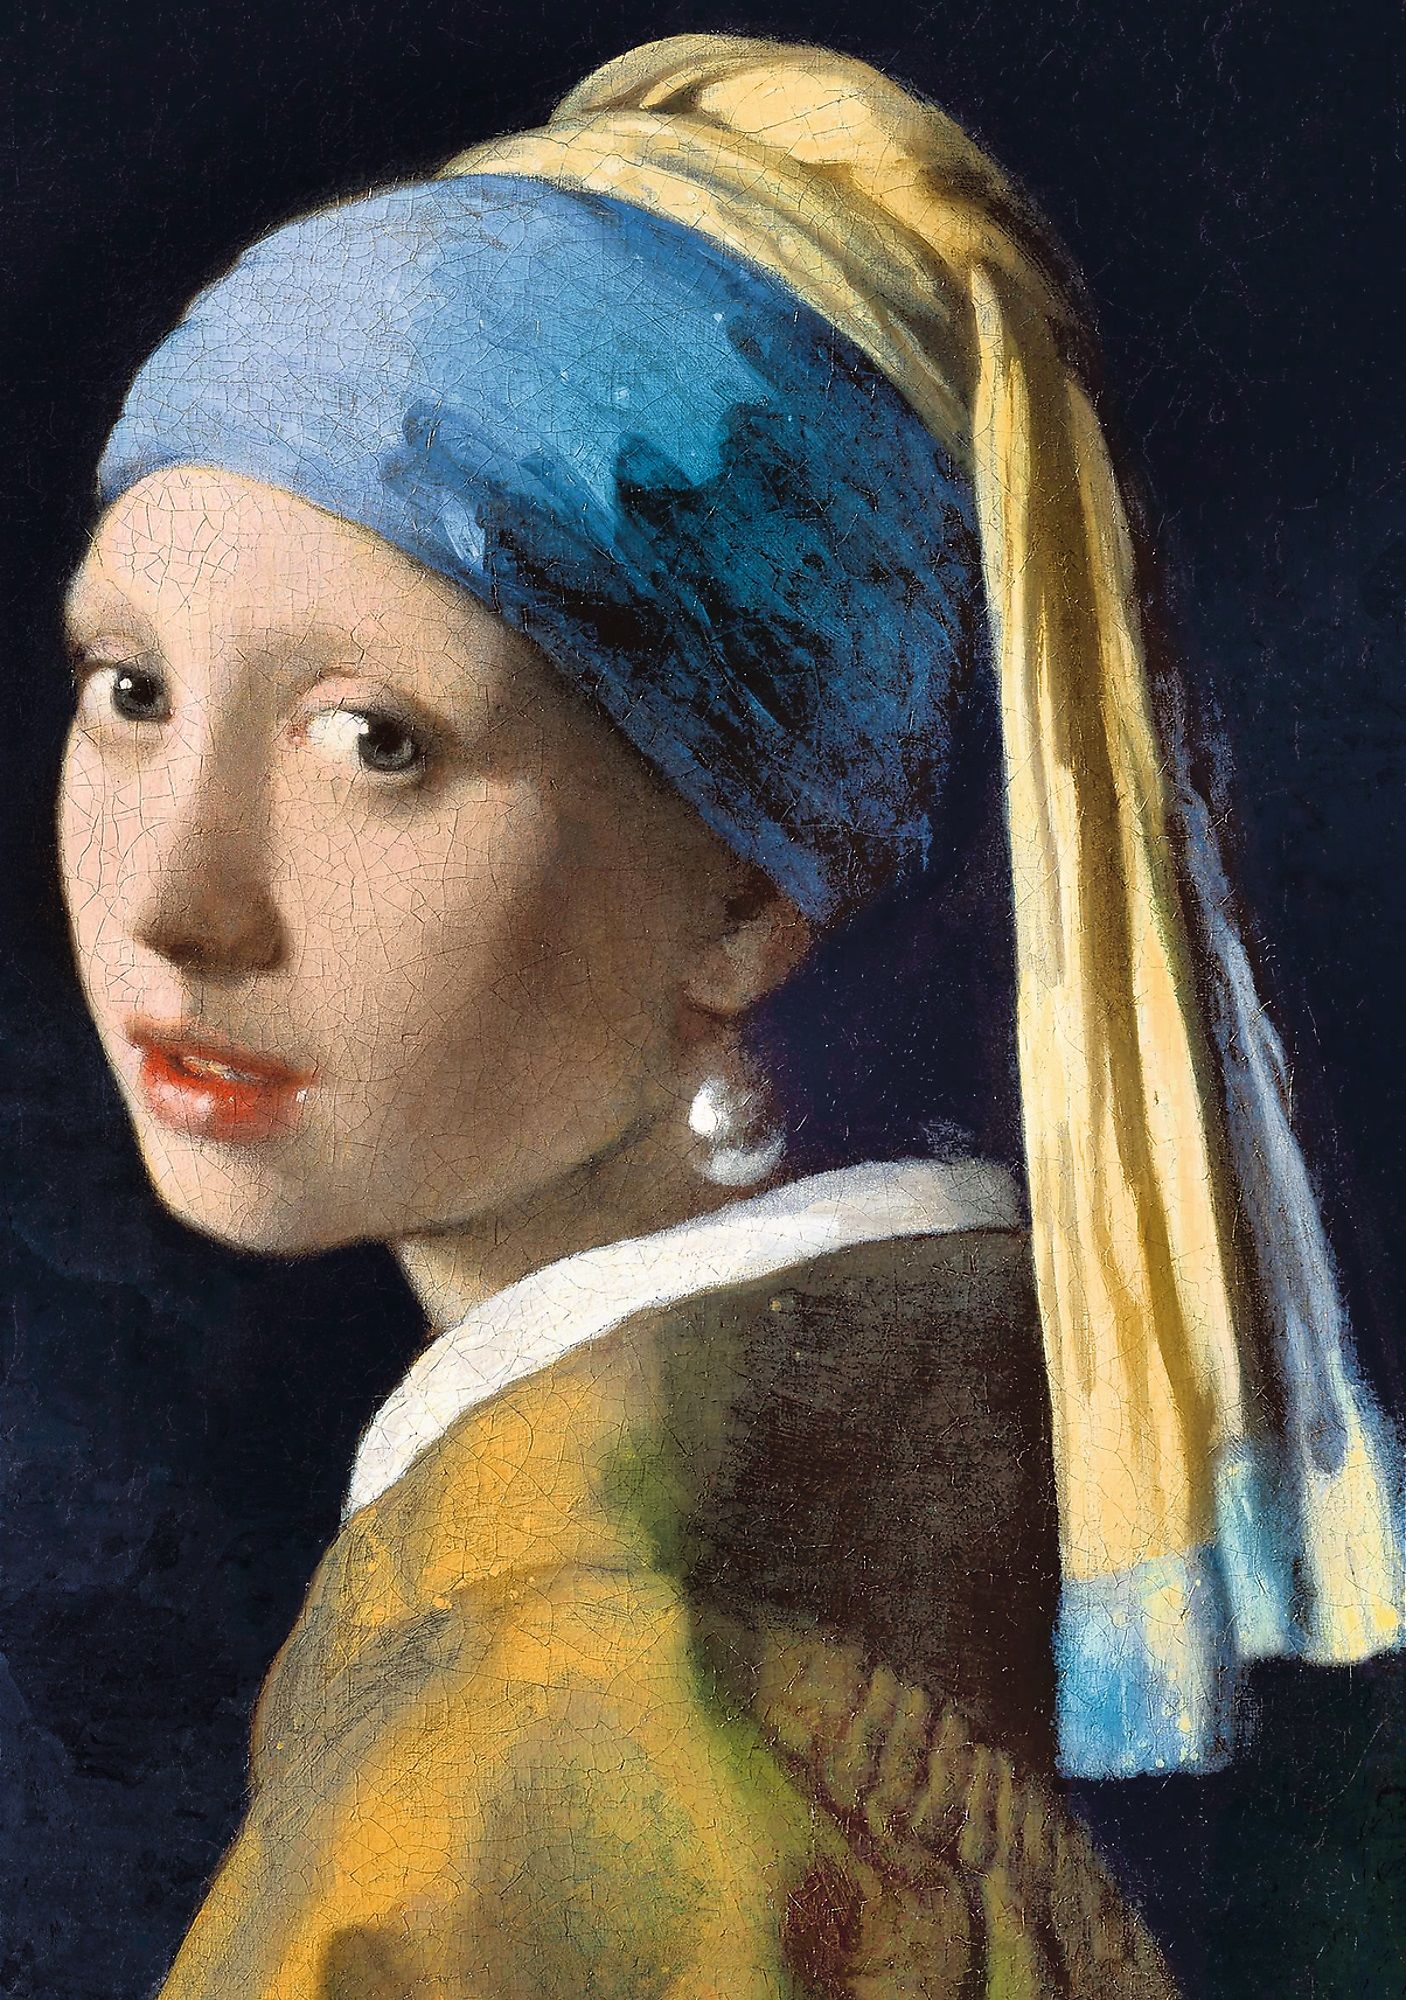 Puzzle 1000 piese - Vermeer | Trefl